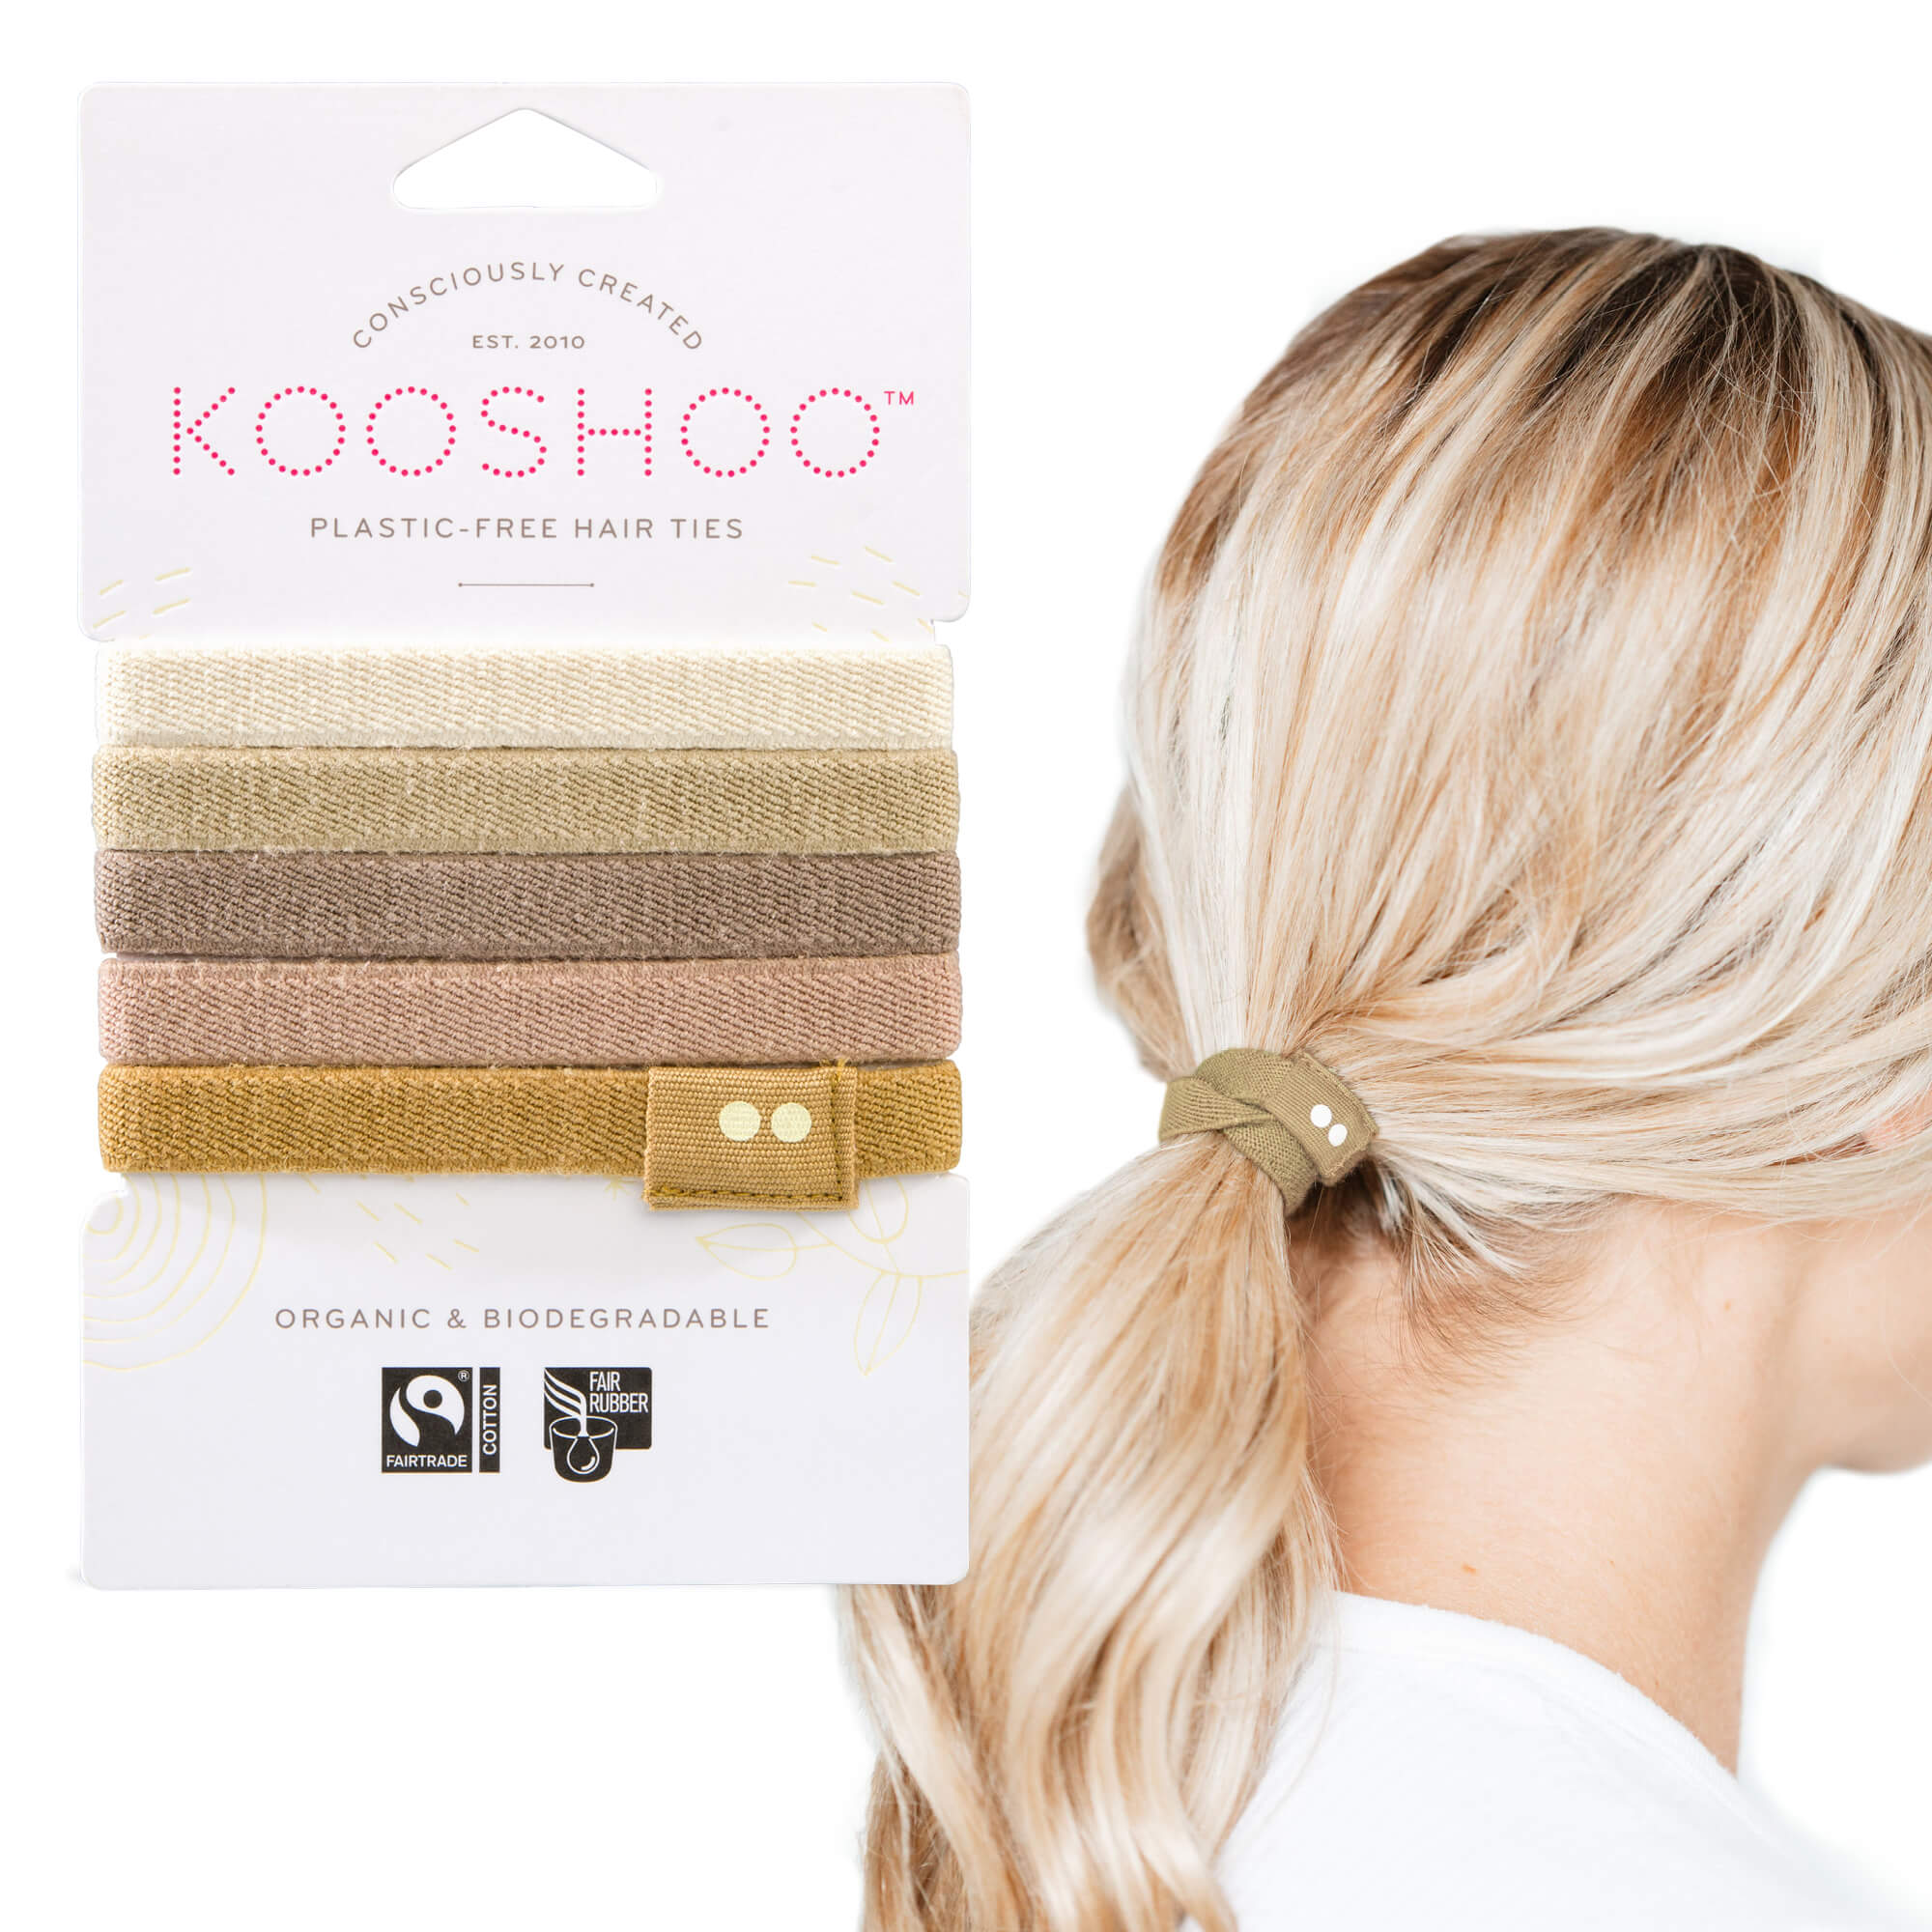 Kooshoo Hair Ties